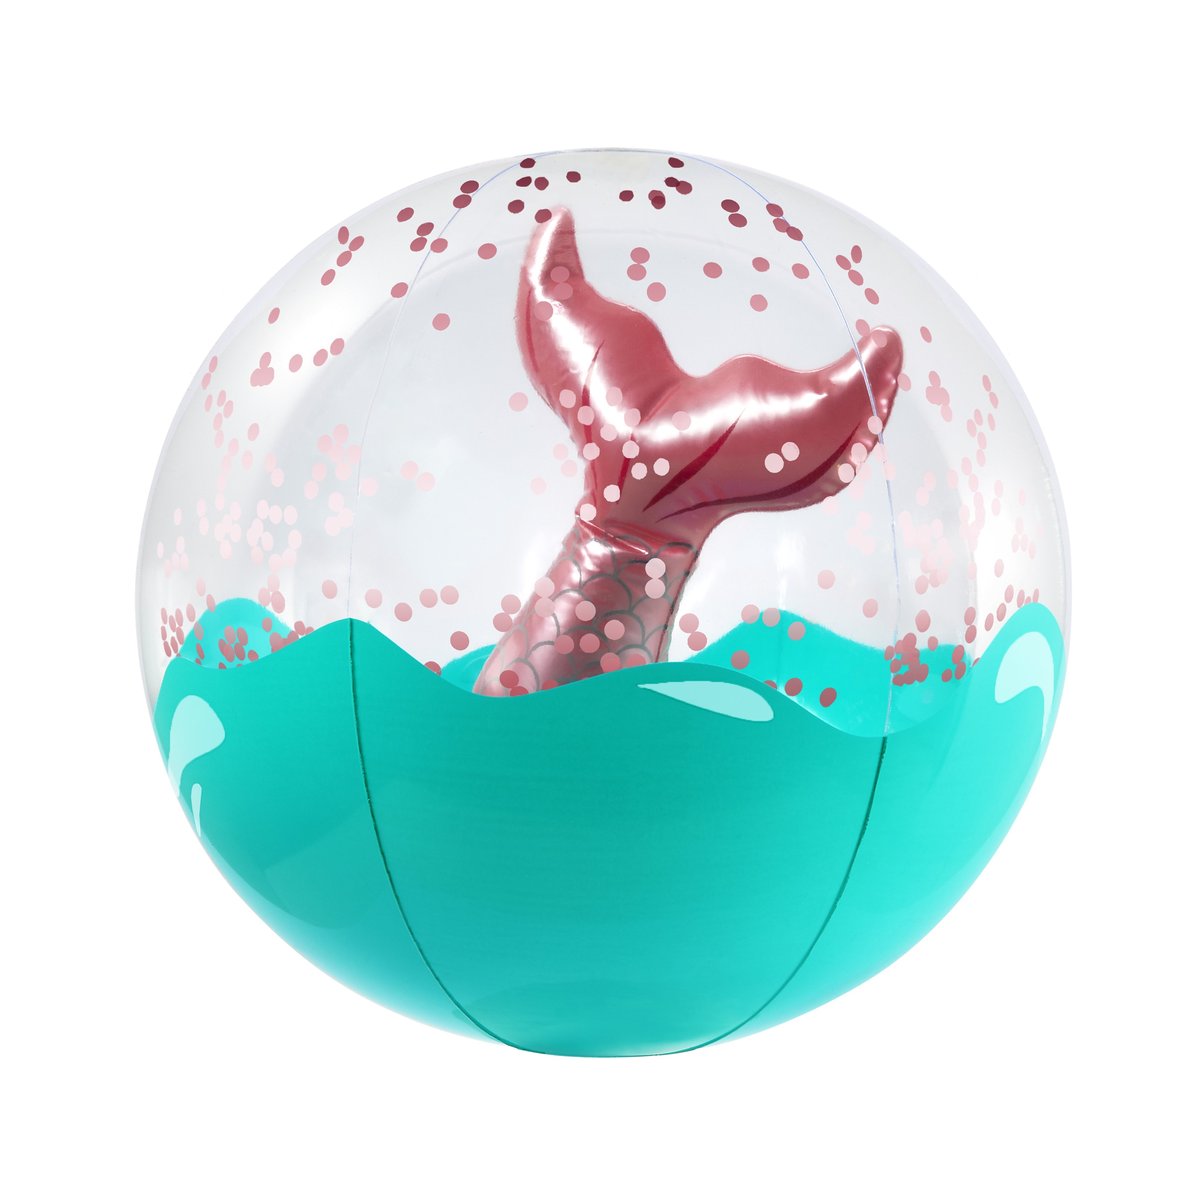 Sunnylife Inflatable 3D Beach Ball 沙灘球 (Mermaid)